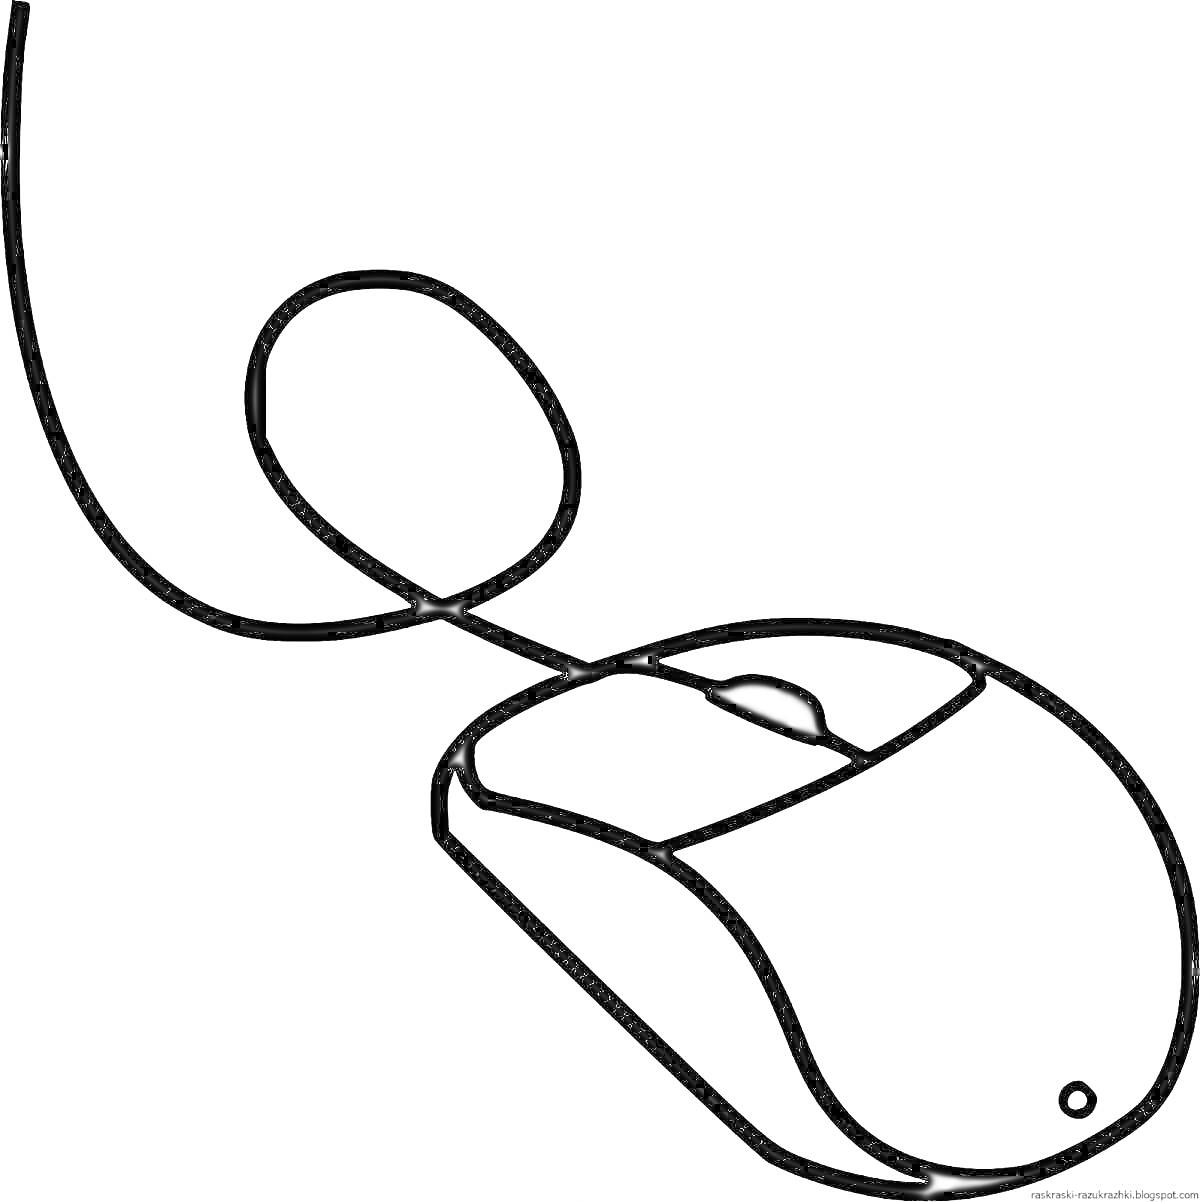 Раскраска Раскраска - компьютерная мышь с проводом, включающим левую и правую кнопку, колесо прокрутки